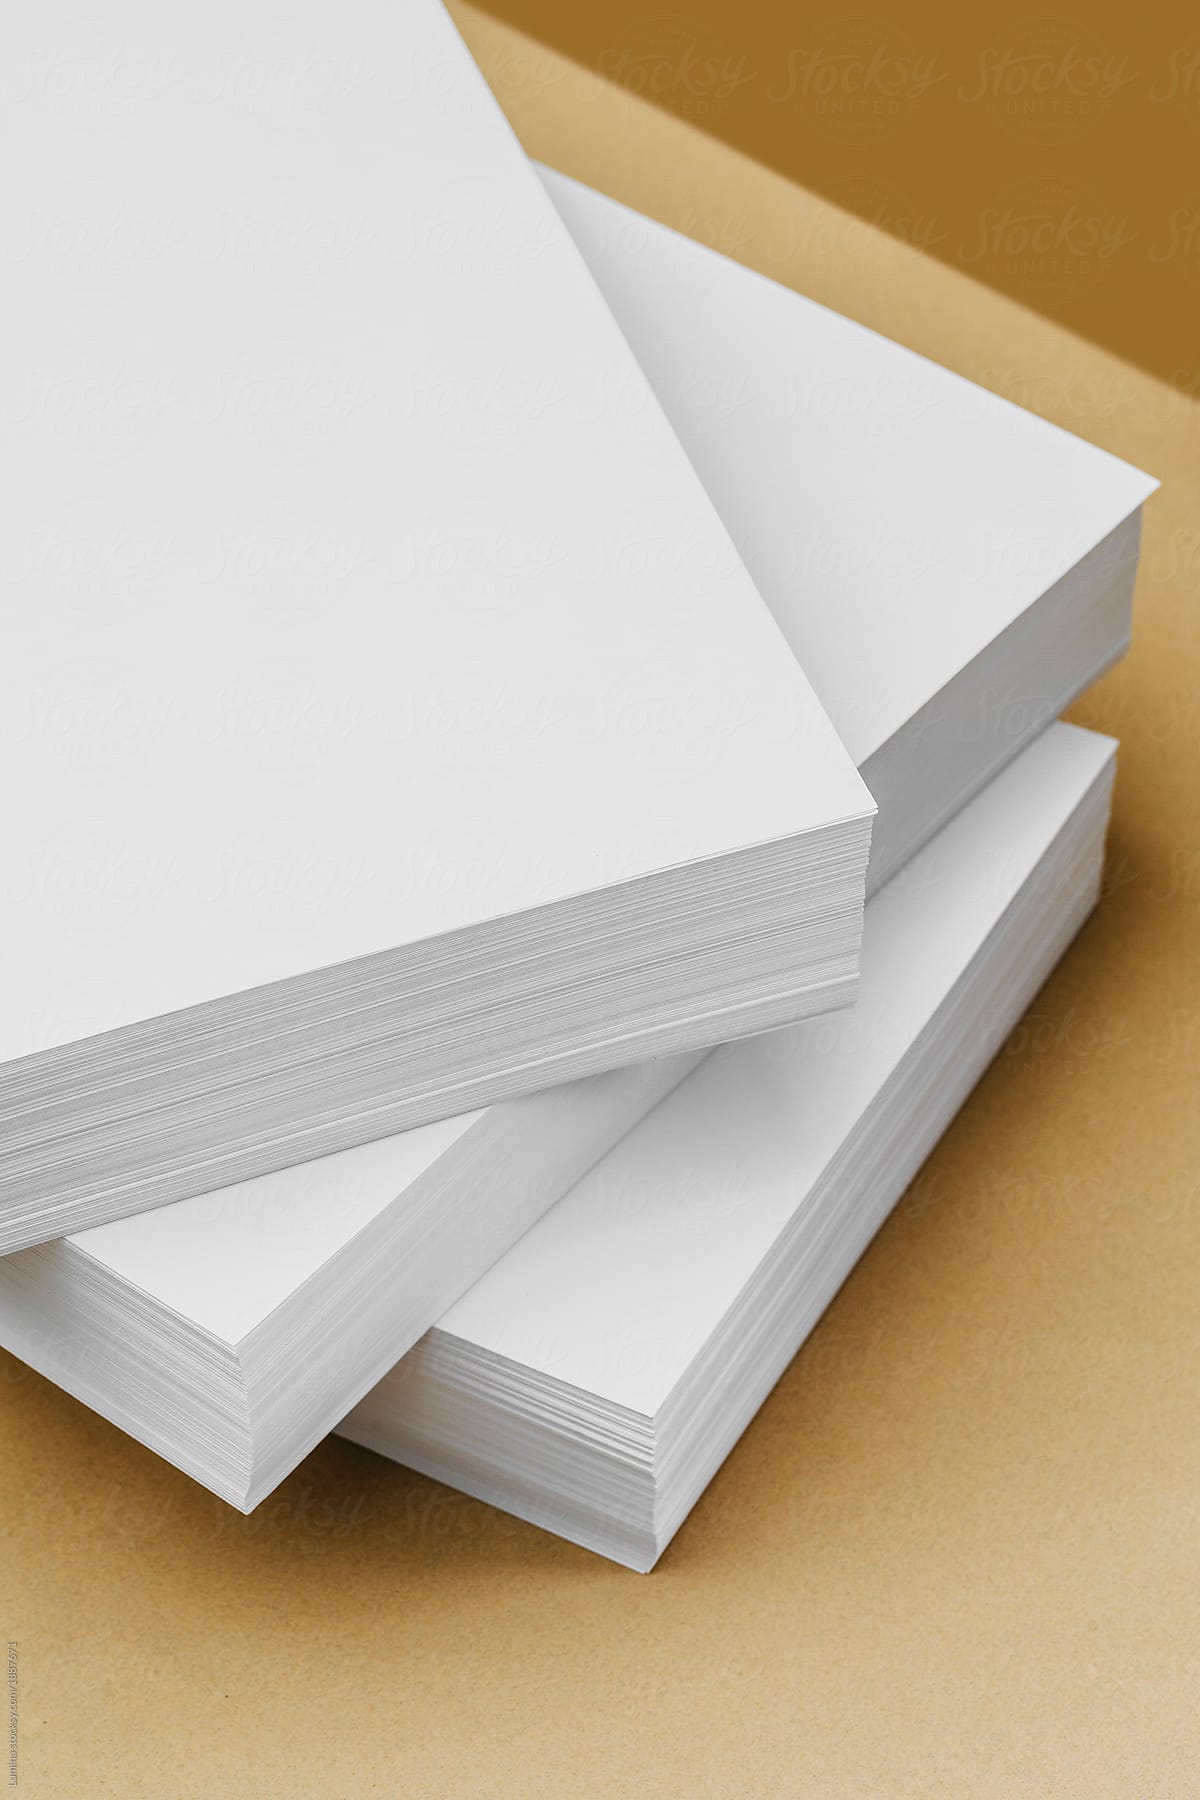 Paper Design